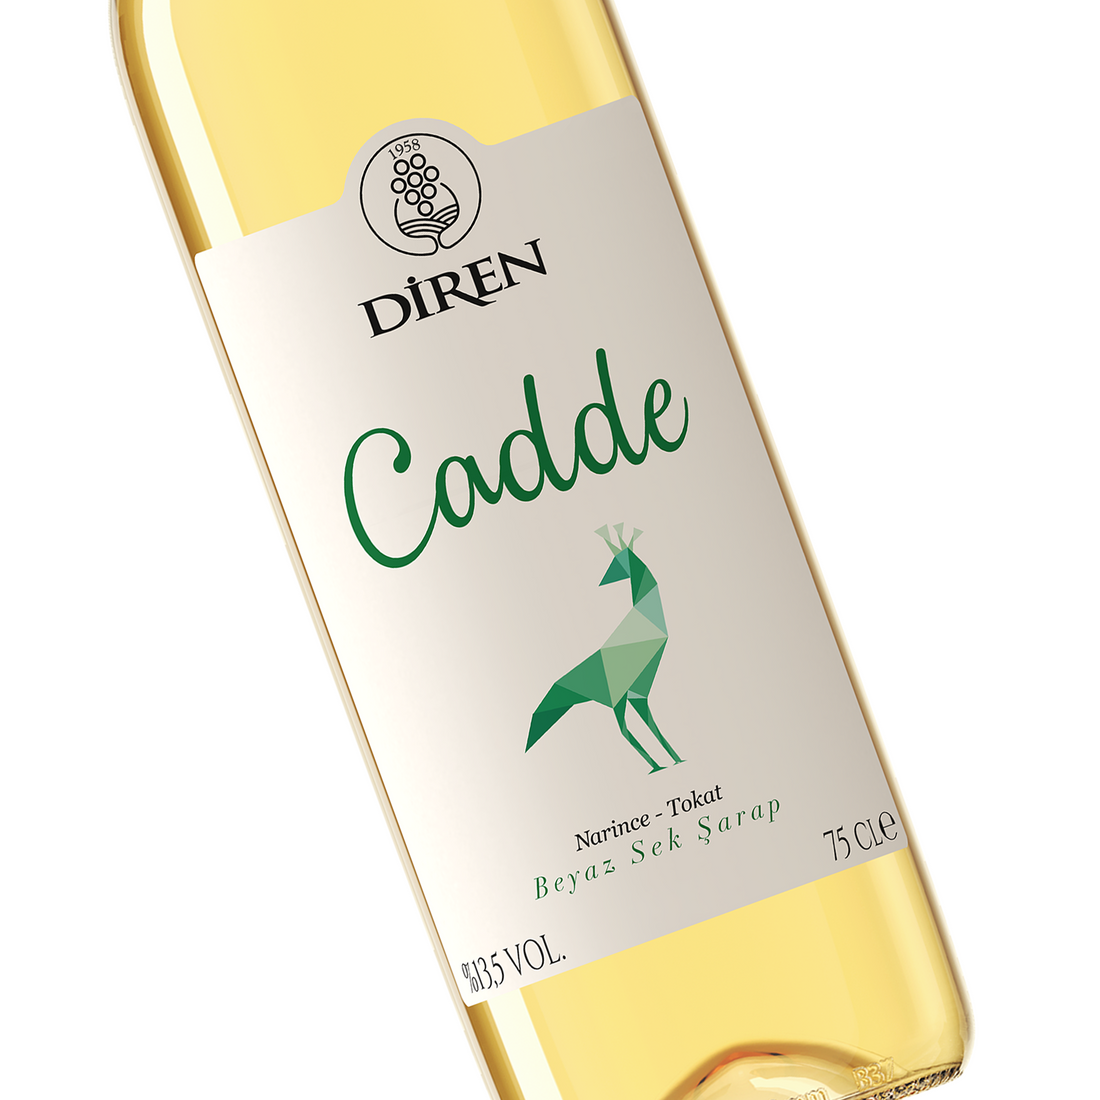 ディレン ジャッデ・ホワイト 750ml 辛口 トルコ 白ワイン | Diren Cadde Beyaz Sek Sarap | Dry White Wine